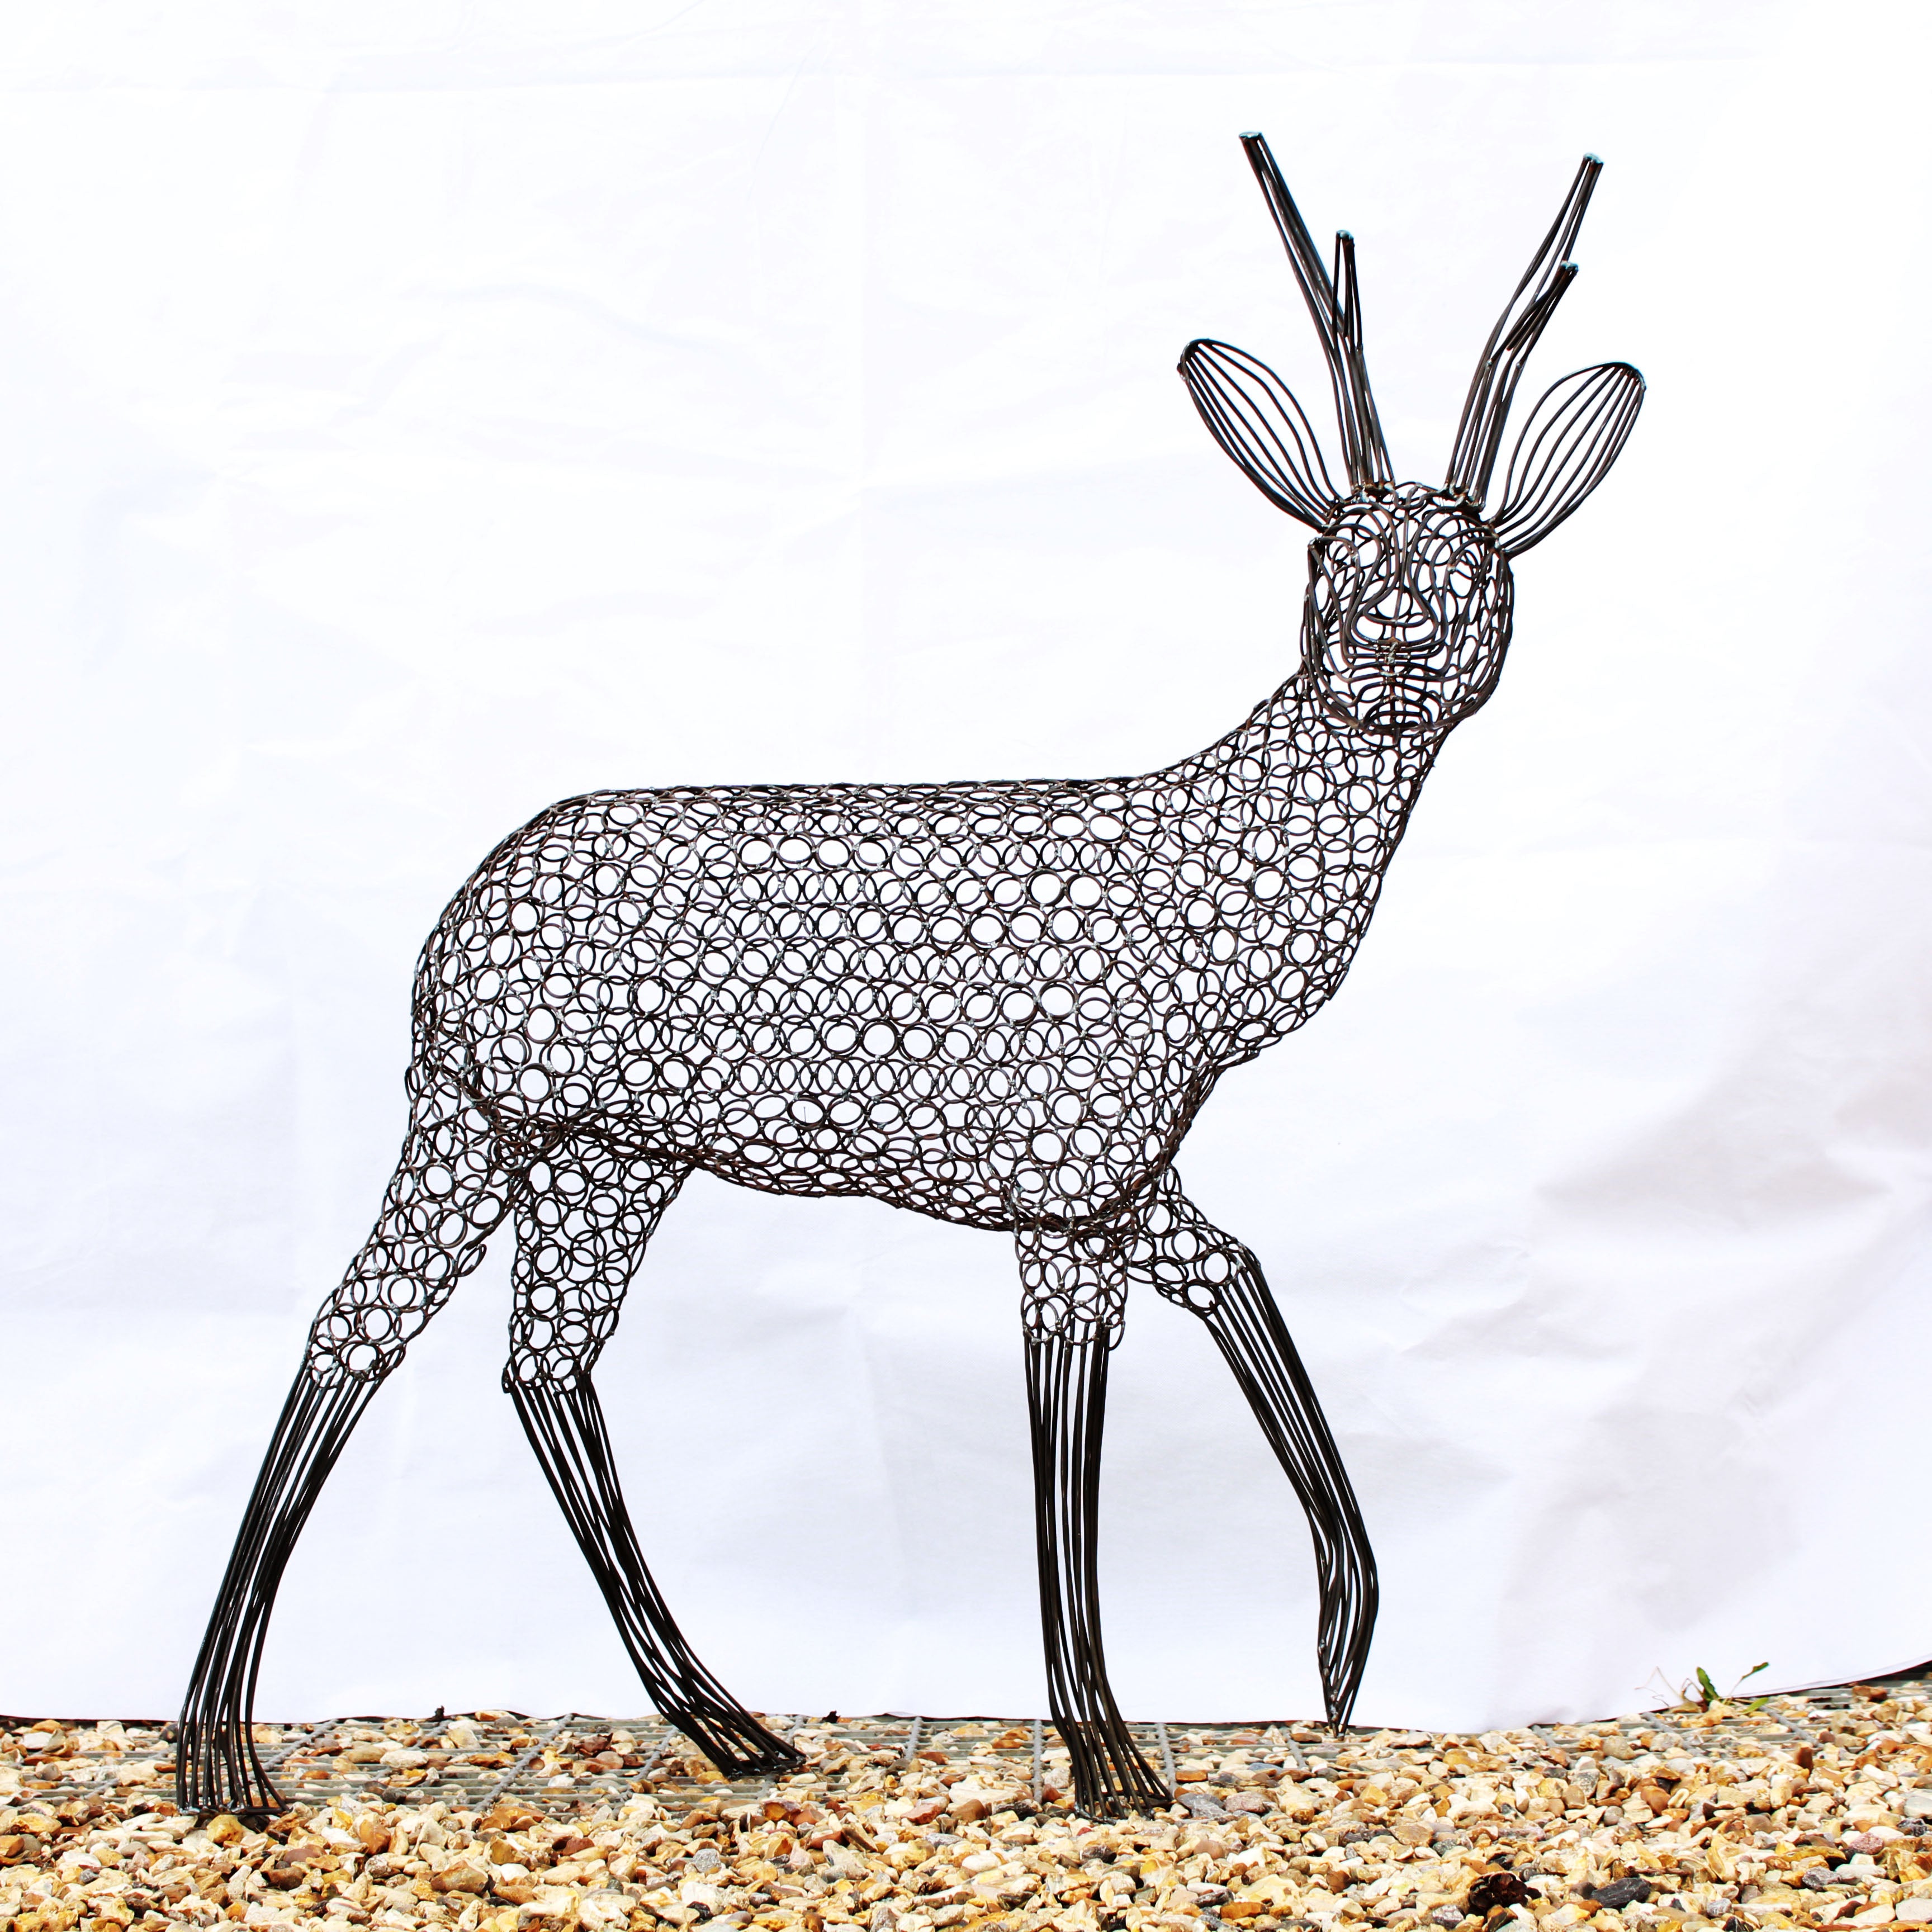 Metal Roe Deer Sculpture by Luigi Frosini - 130cm tall – Top Topiary